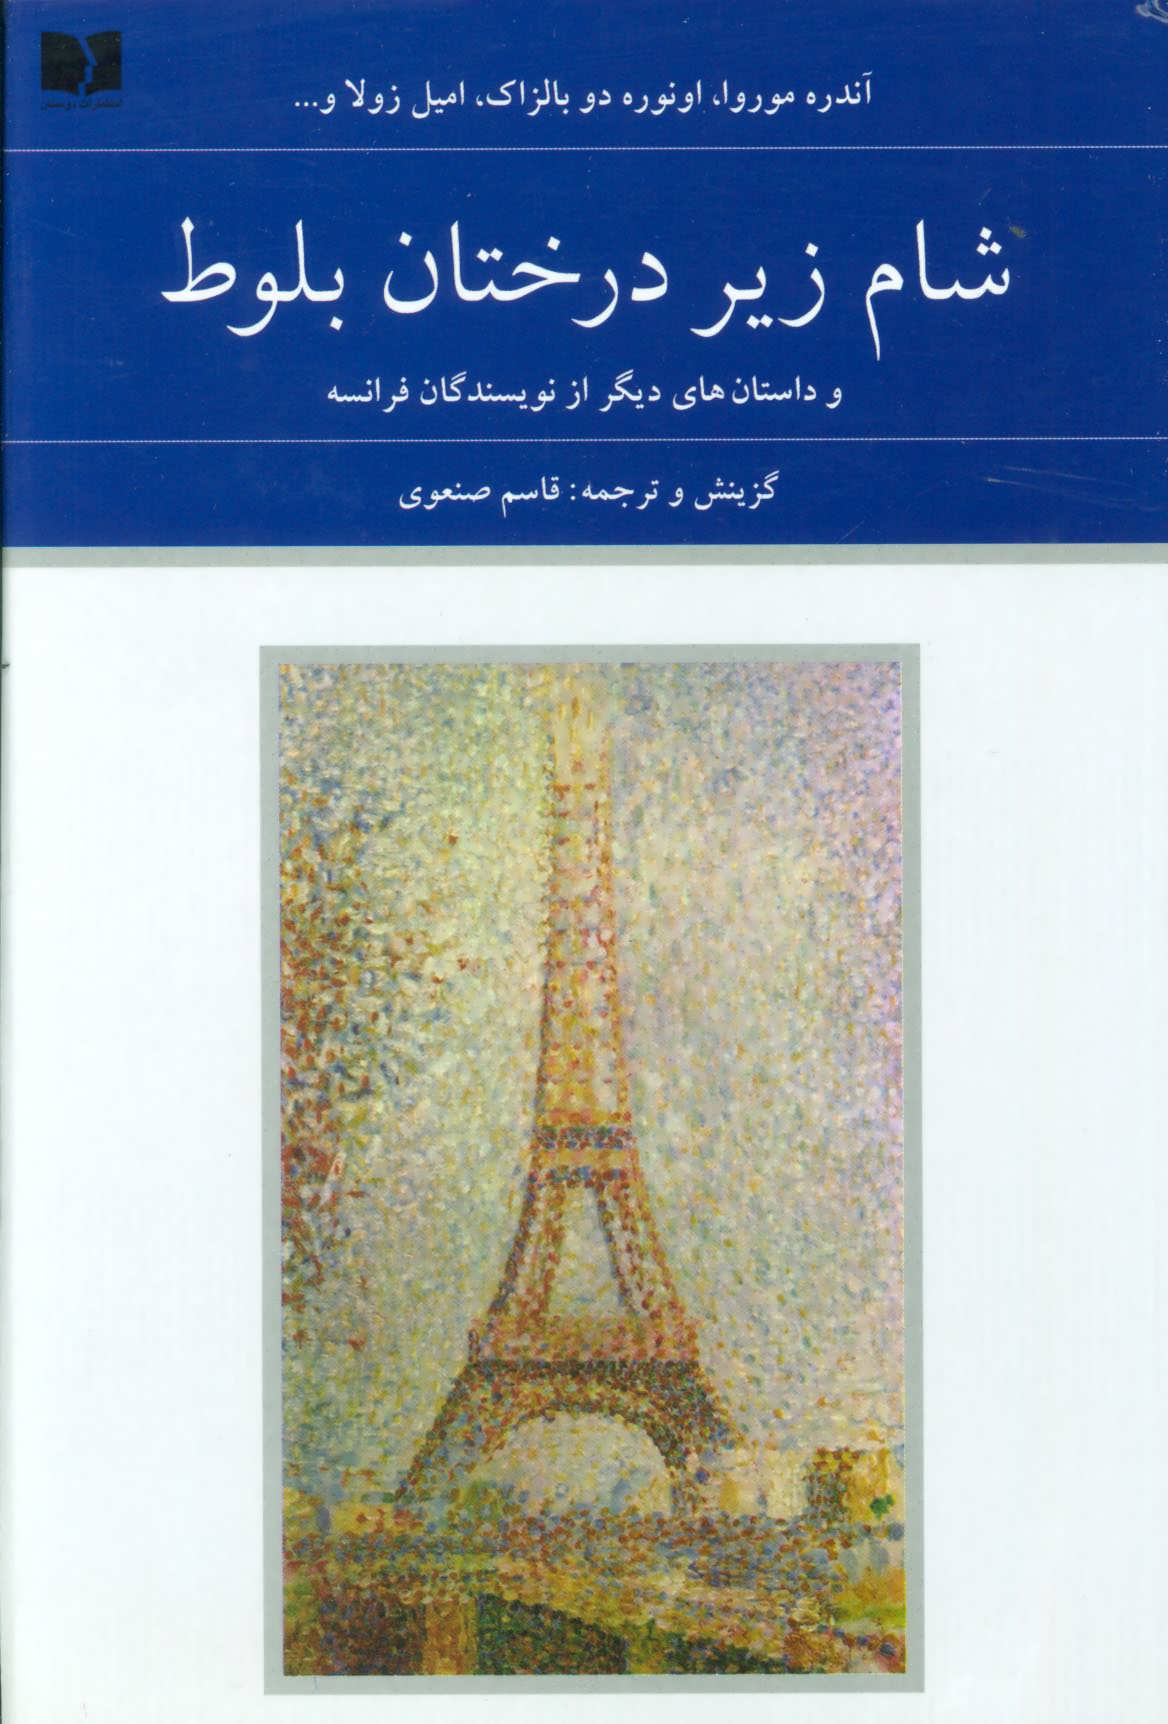 کتاب شام زیر درختان بلوط و داستان های دیگر از نویسندگان فرانسه (هفتاد و دو ملت 5)،(2جلدی)